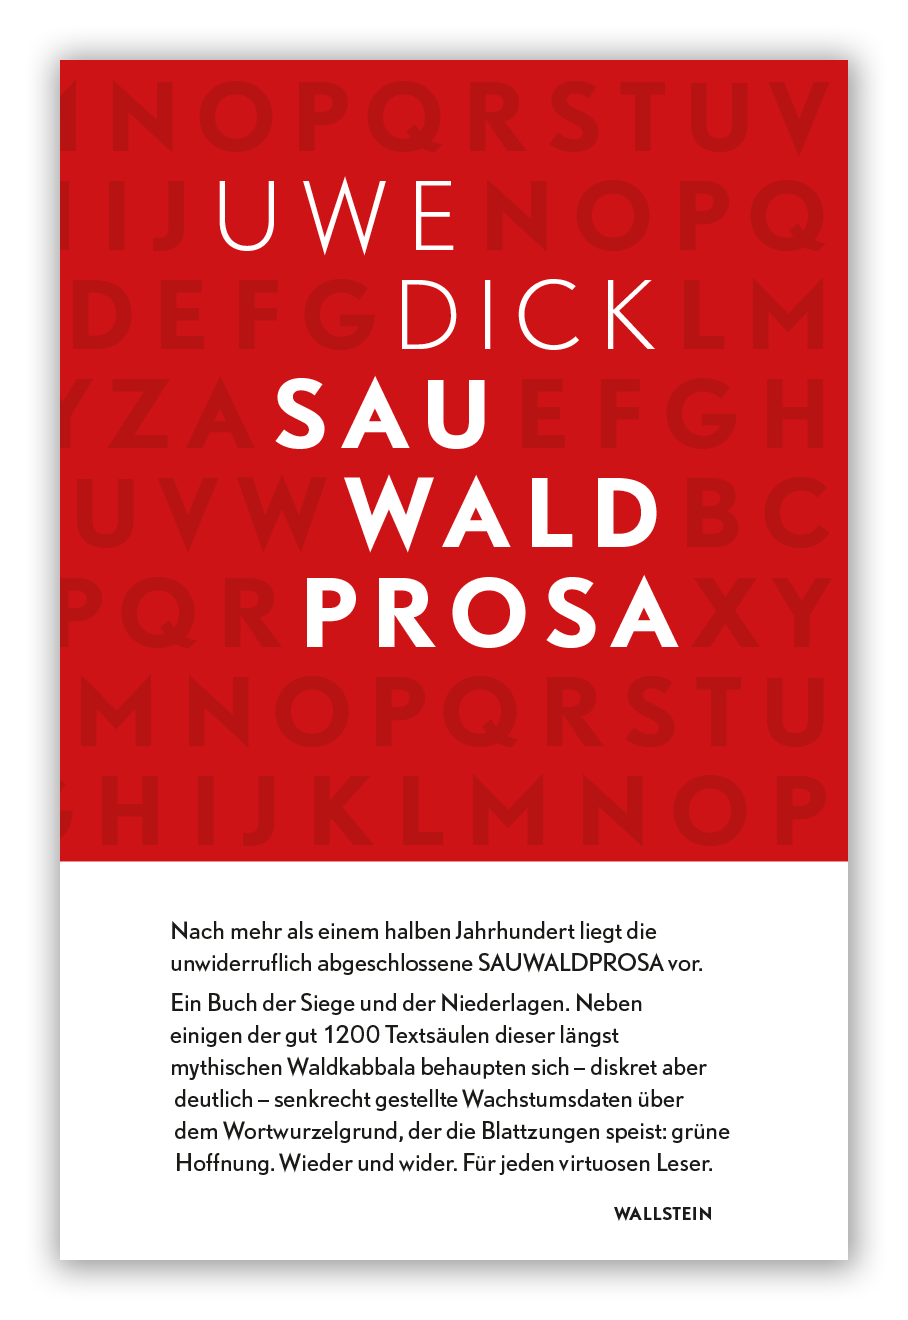 Uwe-Dick-Sauwaldprosa